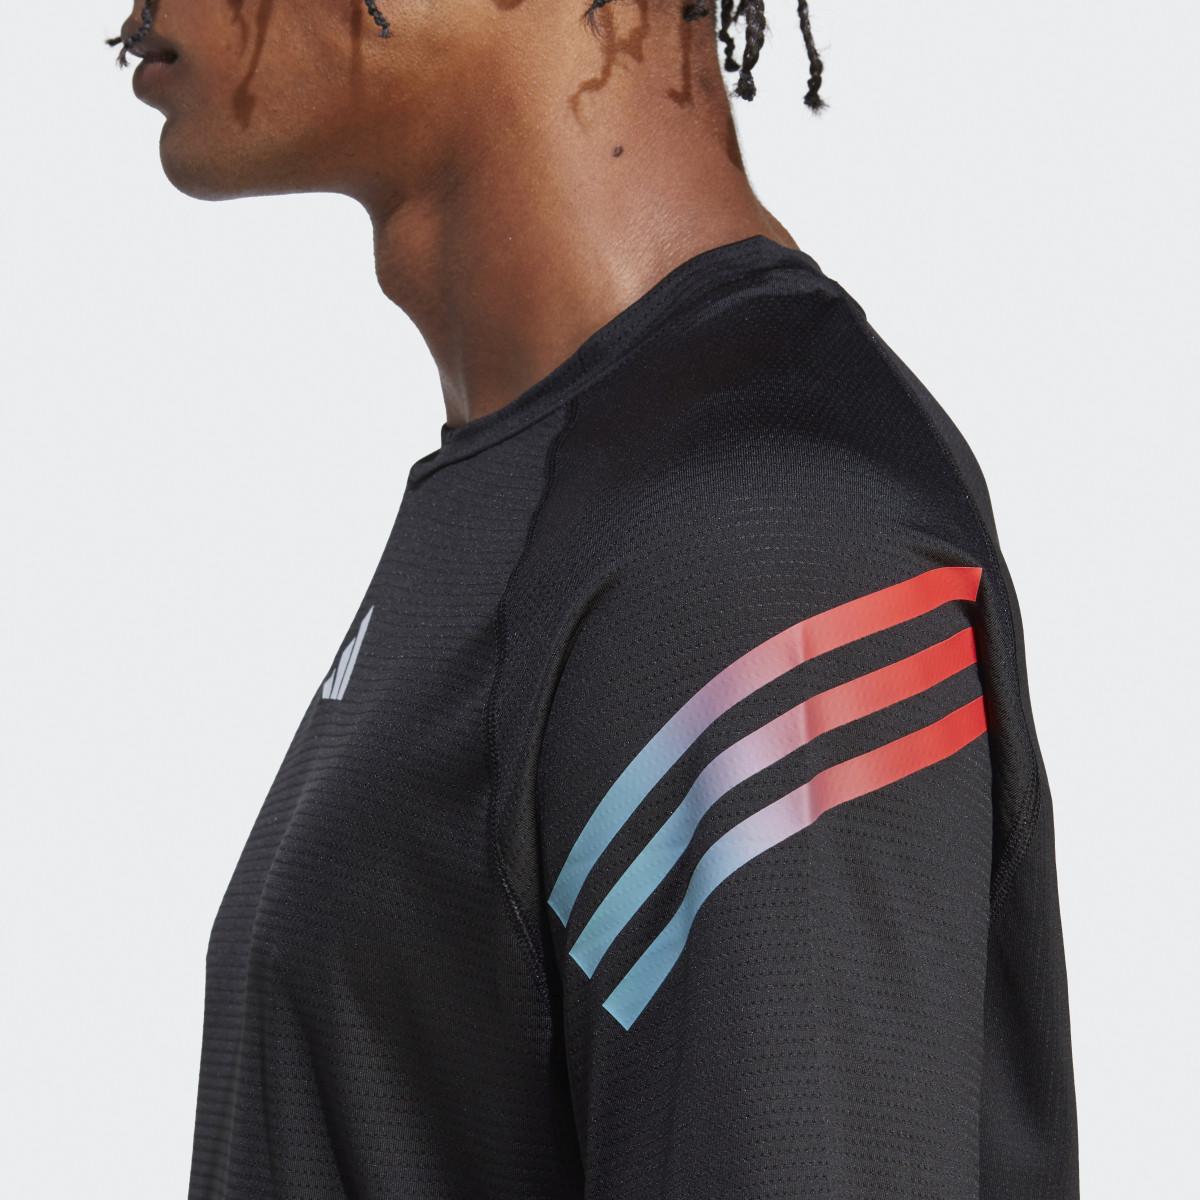 Adidas T-shirt 3-Stripes Train Icons. 7